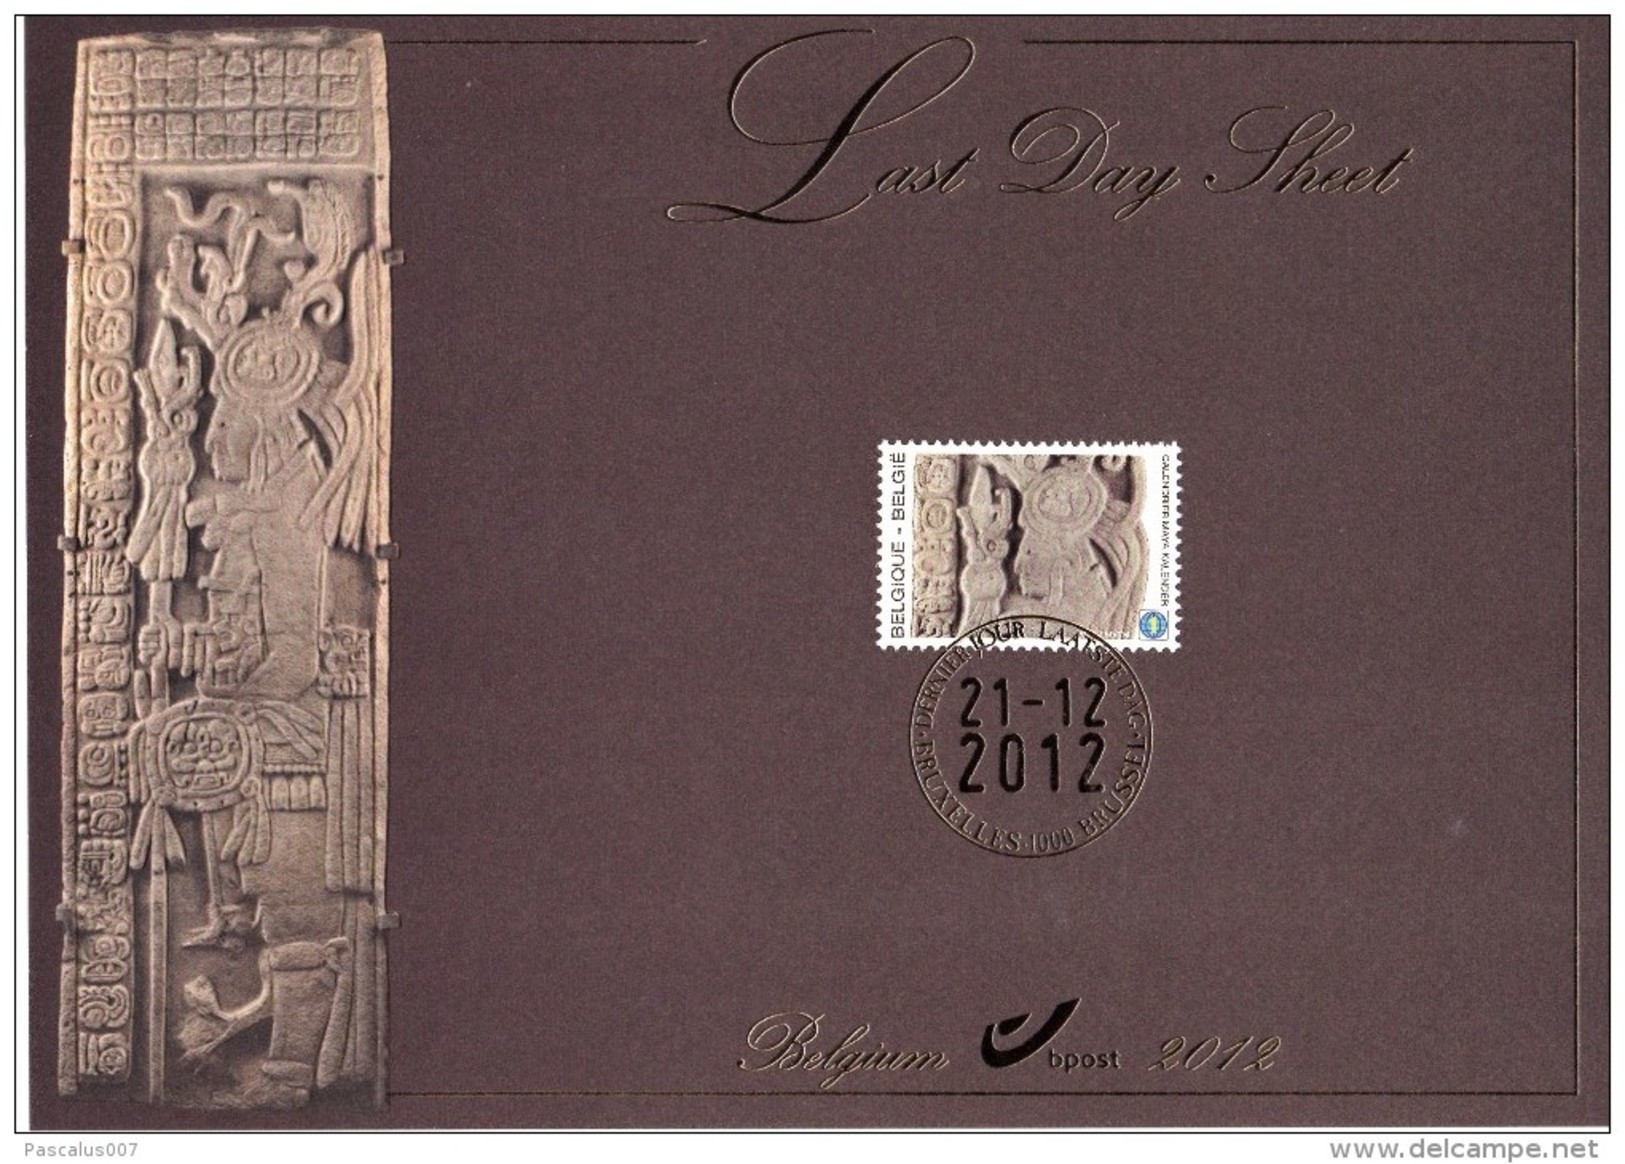 B01-192 Carte Souvenir - Cs - Hk 4194 FDS LDS Belgique Le Calendrier Maya Last Day Sheet 21-12-2012 Bruxelles 1000 Bruss - Erinnerungskarten – Gemeinschaftsausgaben [HK]